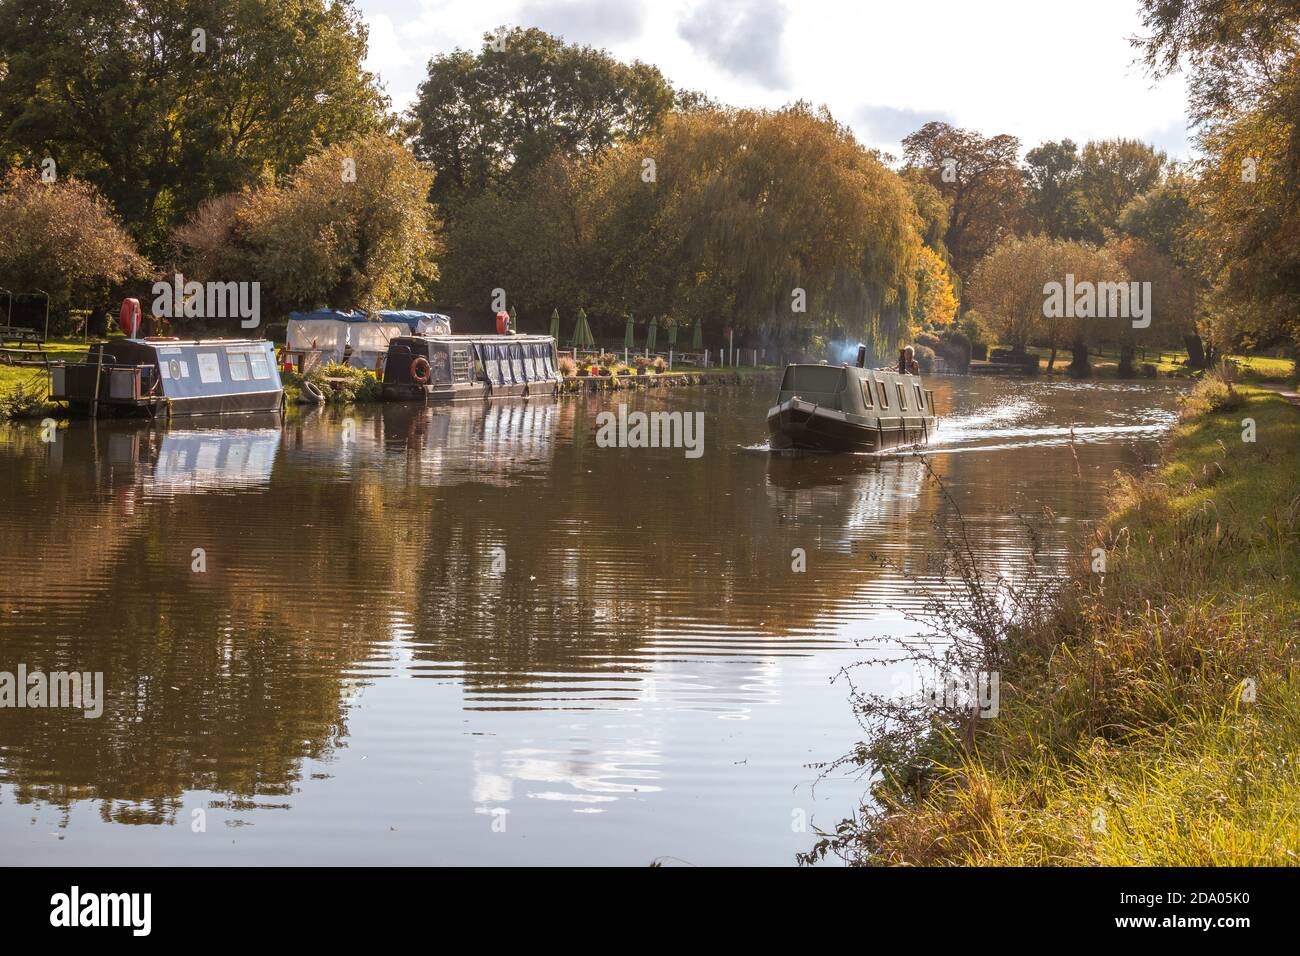 Bateau à rames voyageant sur la rivière Cam près de Cambridge, Angleterre Banque D'Images